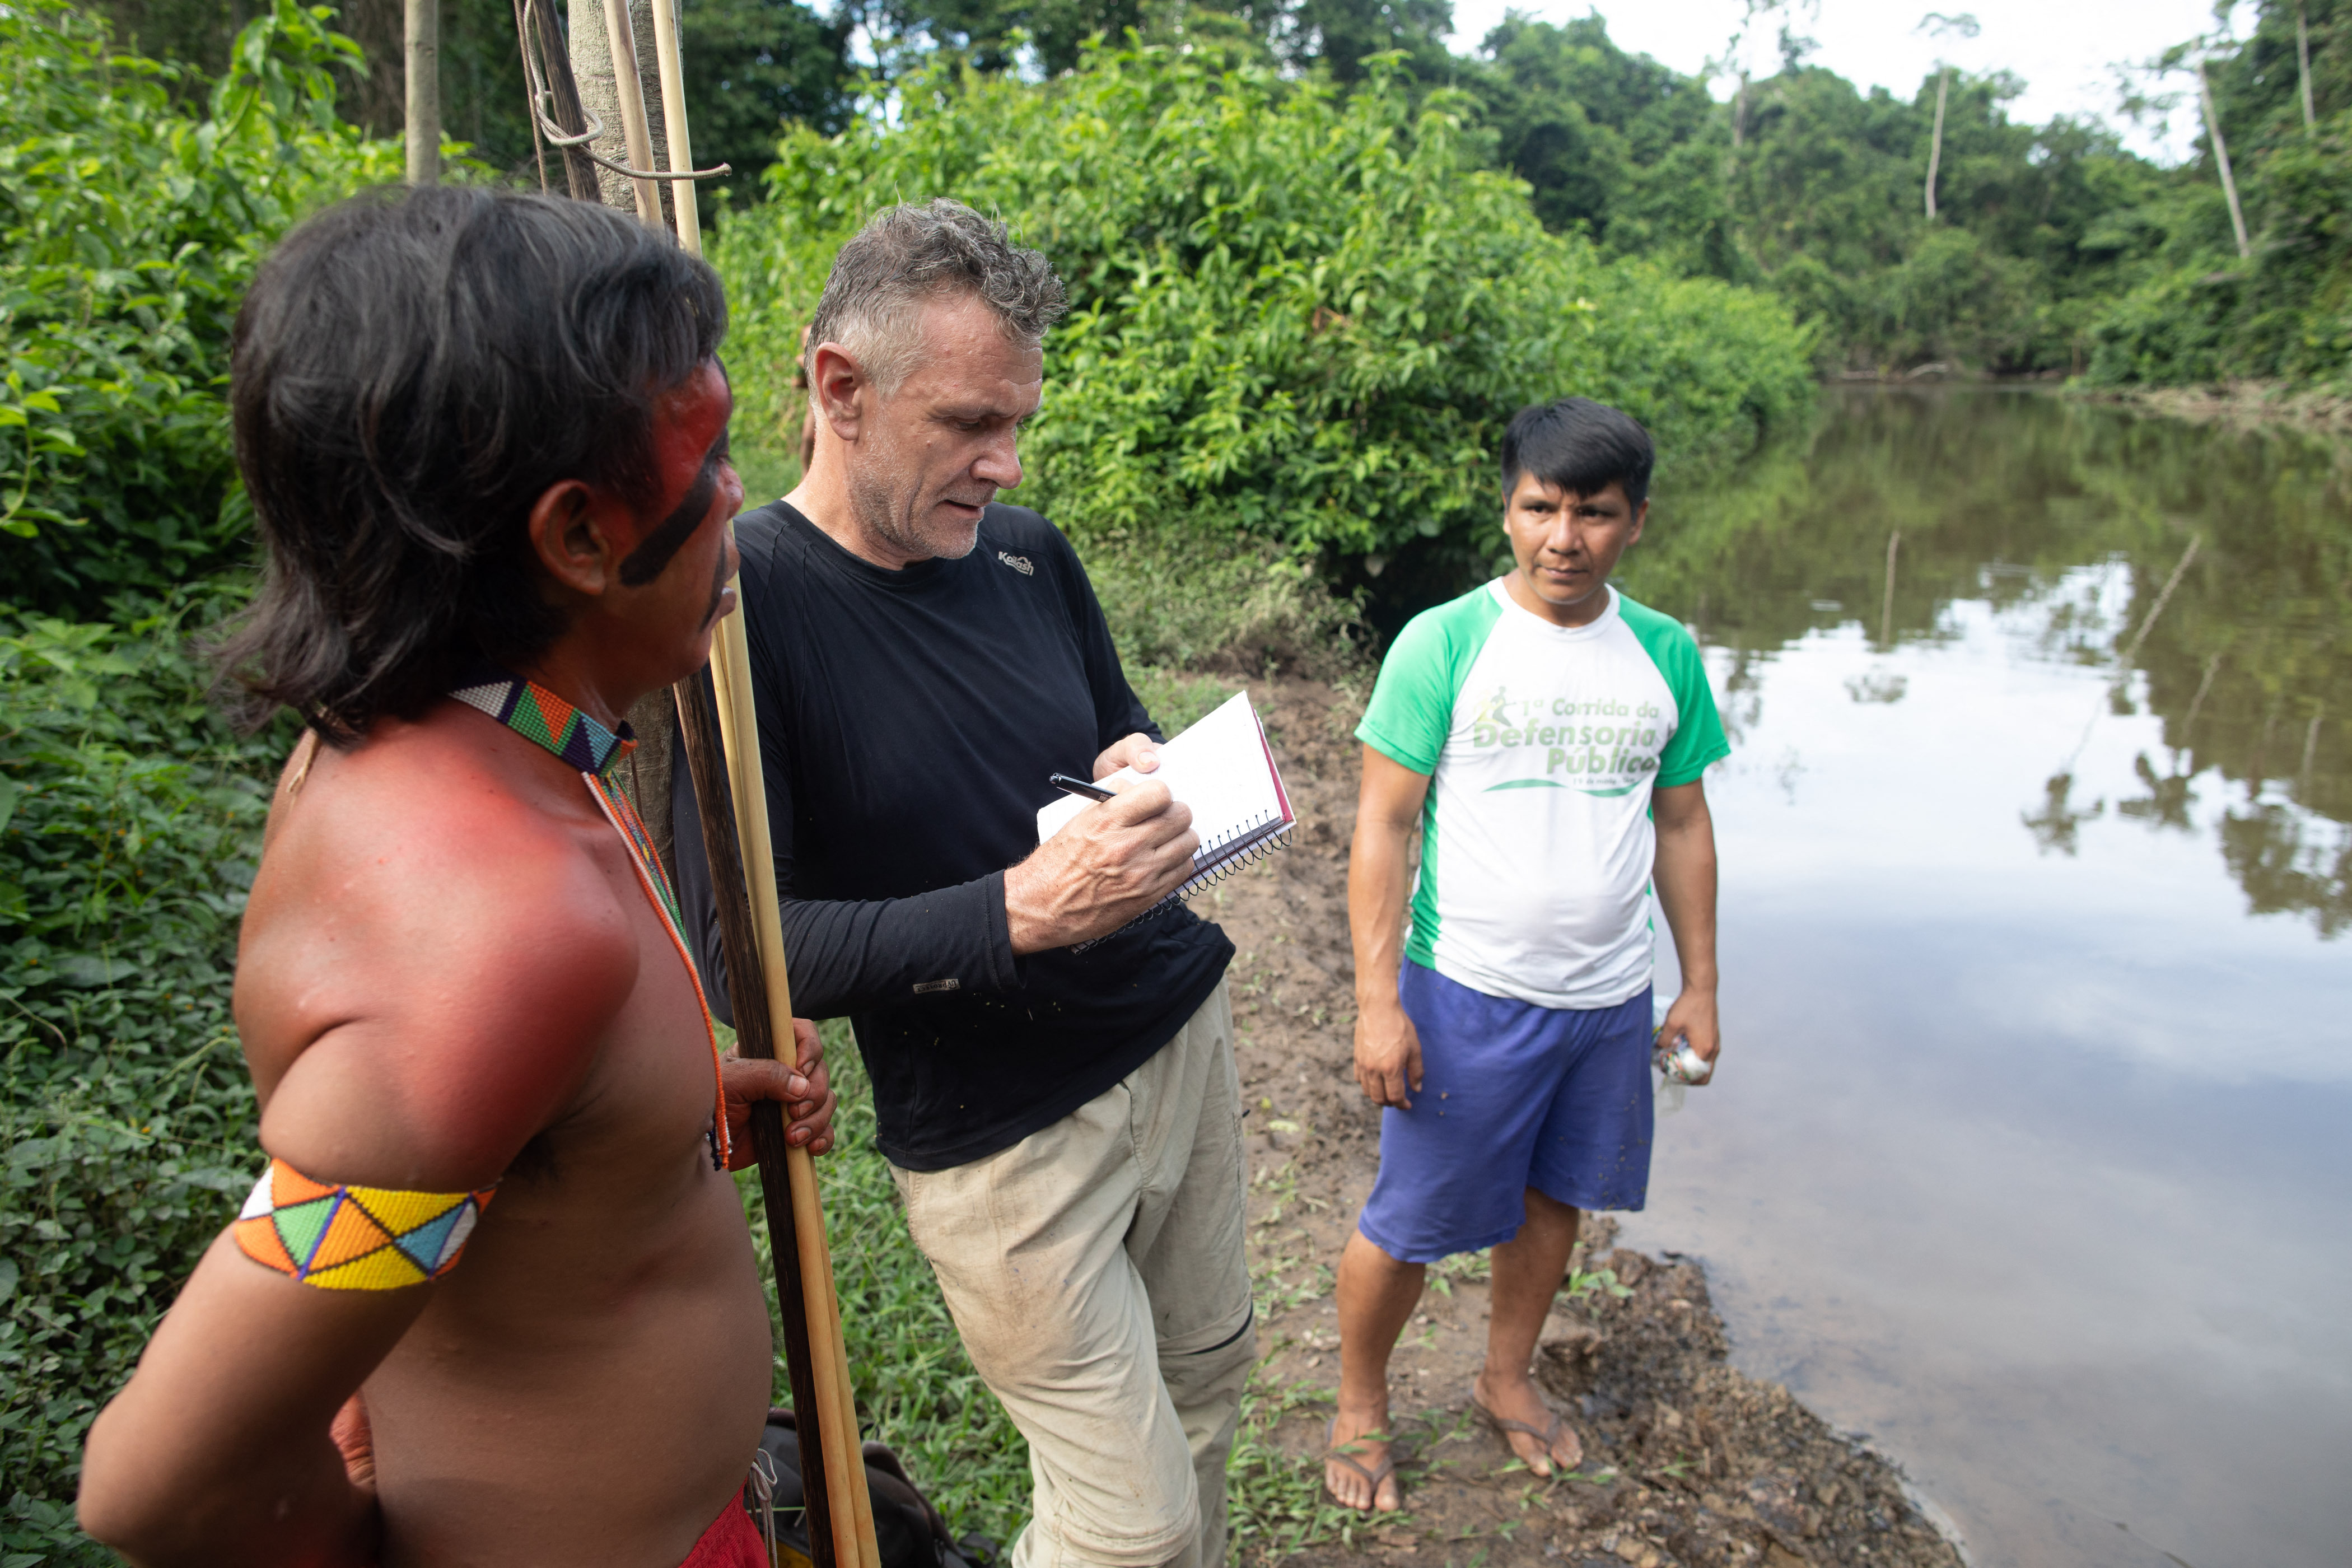 Ce s-a aflat despre dispariția unui jurnalist și a unui expert indigen ce vizitau un trib în Brazilia. S-a făcut o arestare